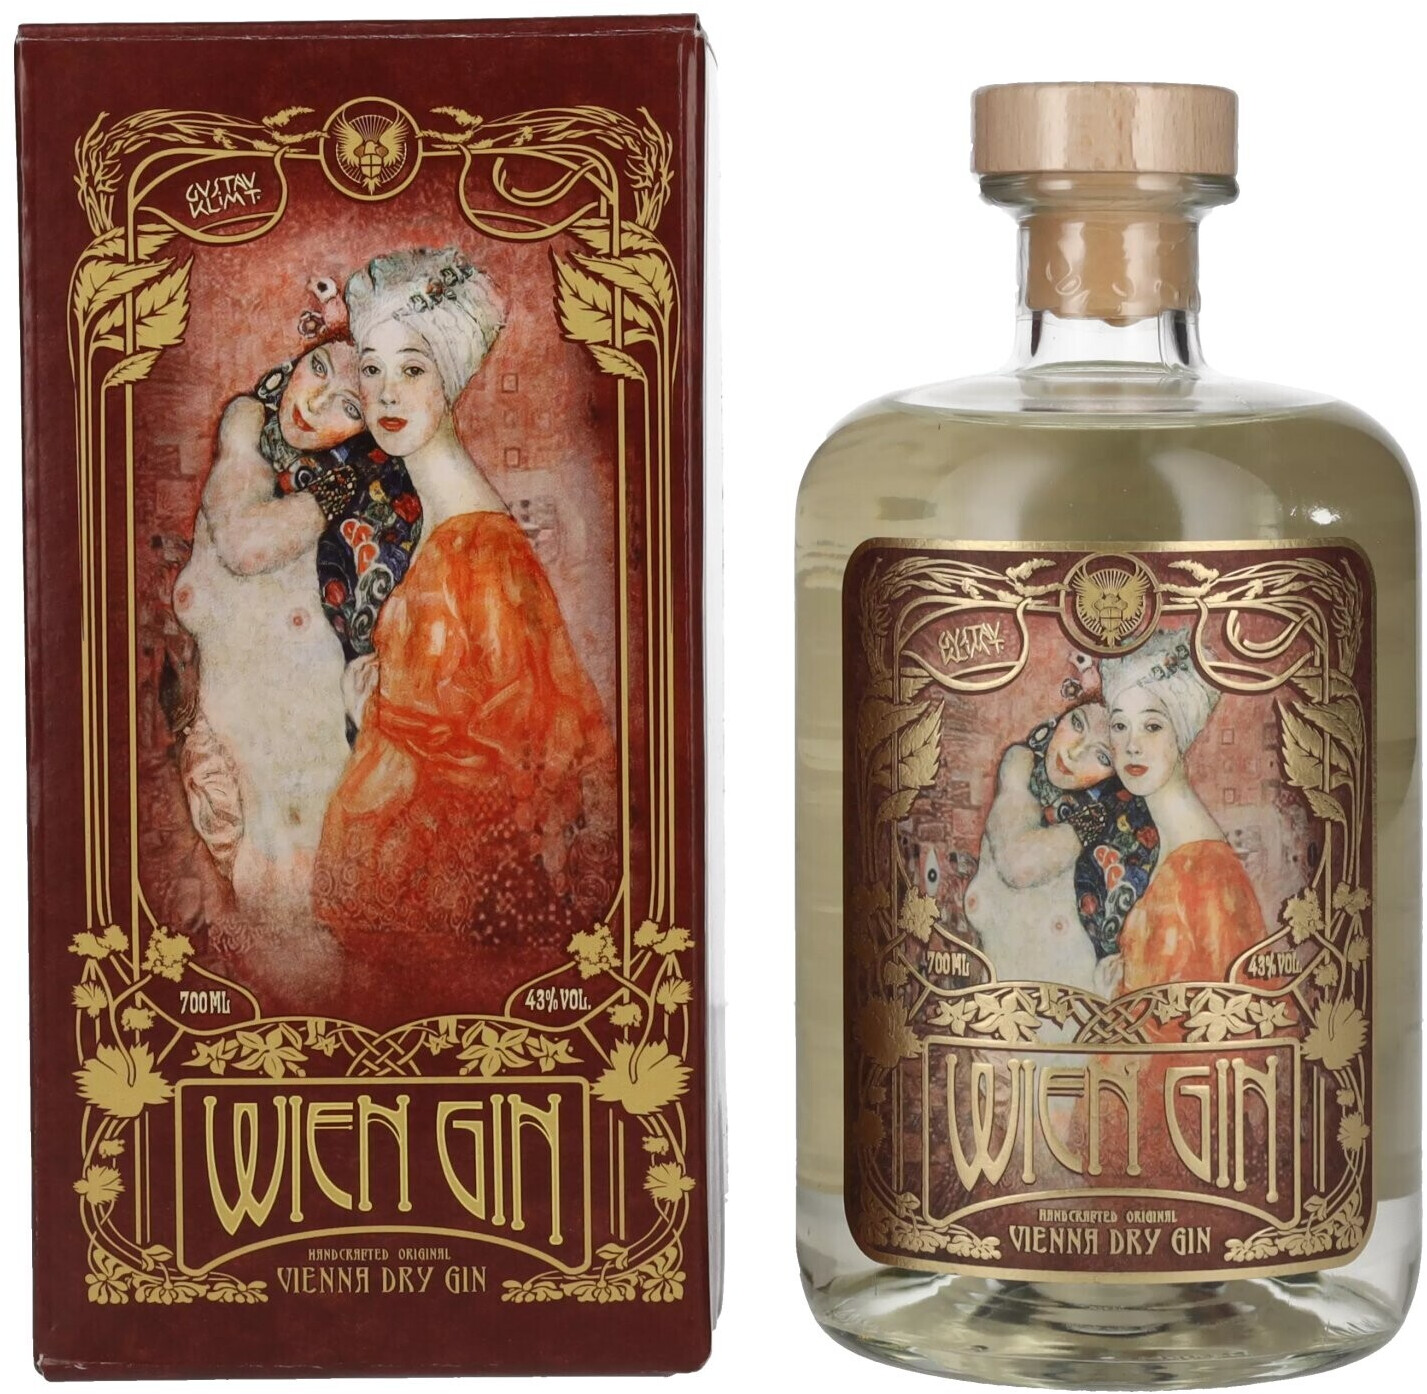 Kesselbrüder Wien Gin Klimt Edition Vienna Dry Gin 43% 0,70l ab 44,90 € |  Preisvergleich bei